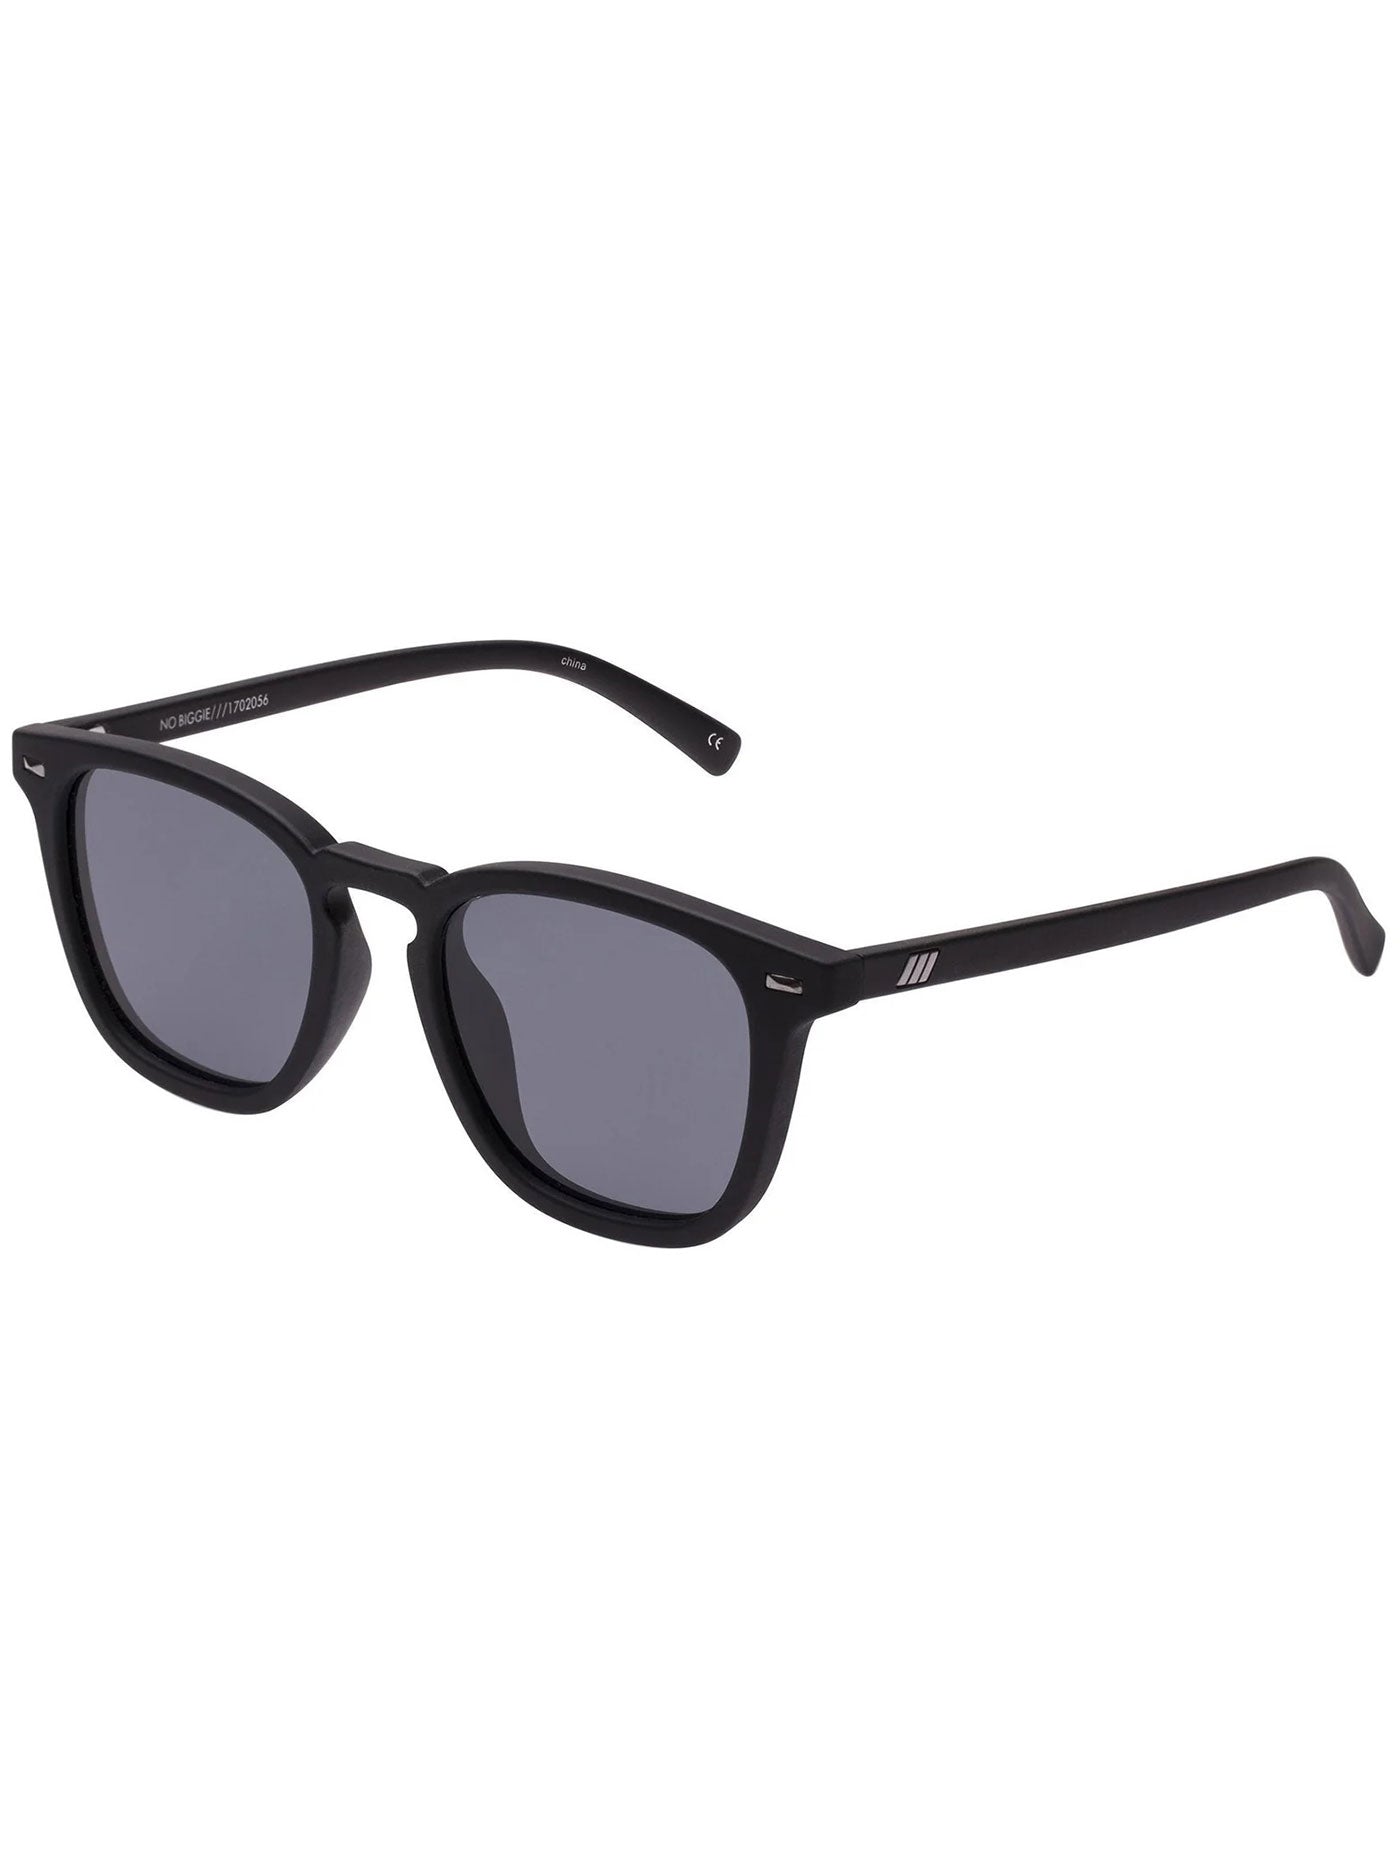 Le Specs No Biggie Black/Smoke Mono Sunglasses